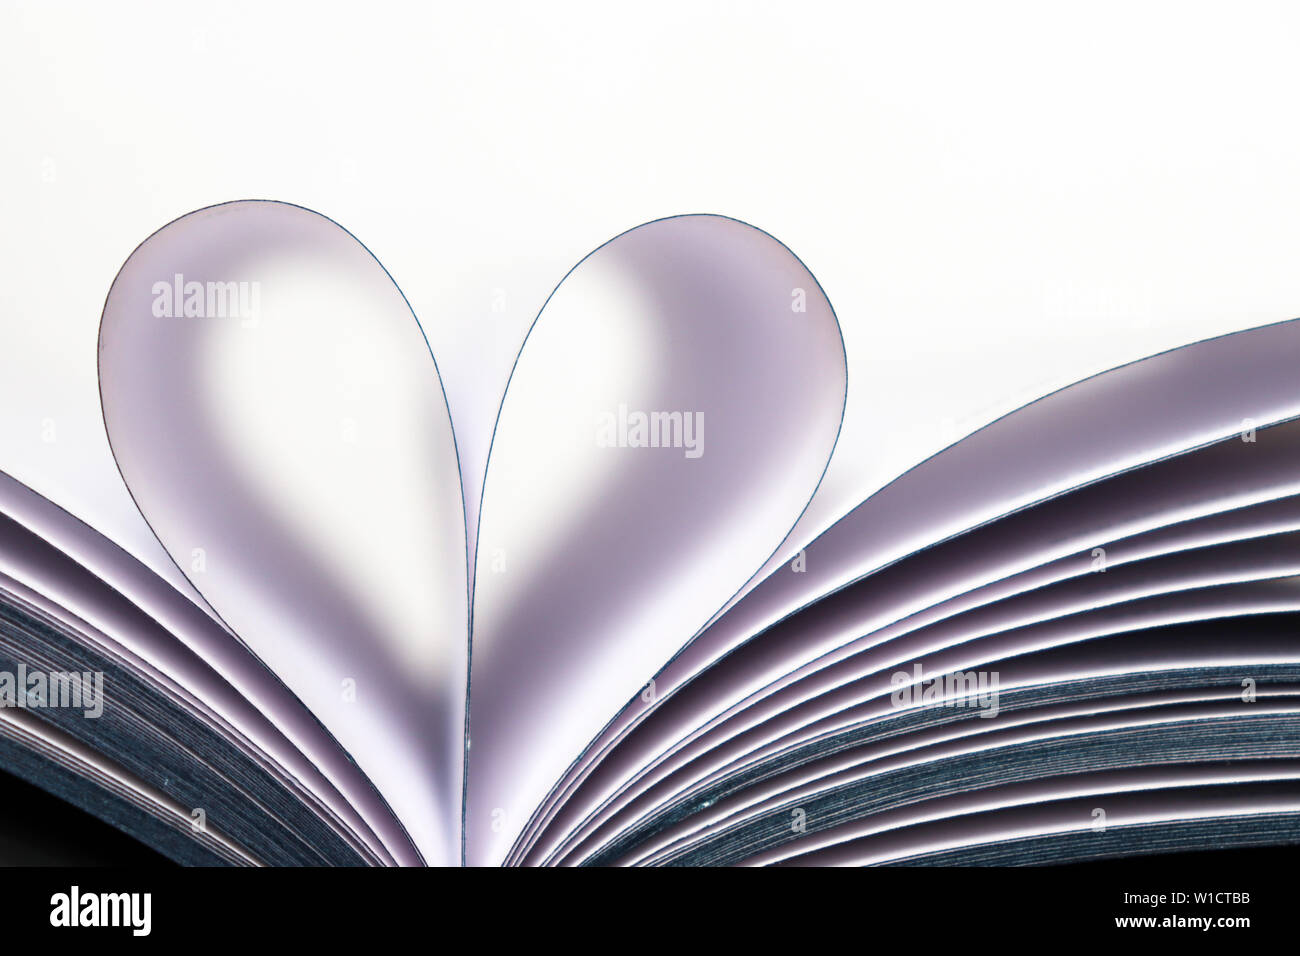 Des pages de livre ouvert en forme de coeur isolé sur fond blanc. Pour l'amour de la lecture, concept de la science, de l'apprentissage, romance Banque D'Images